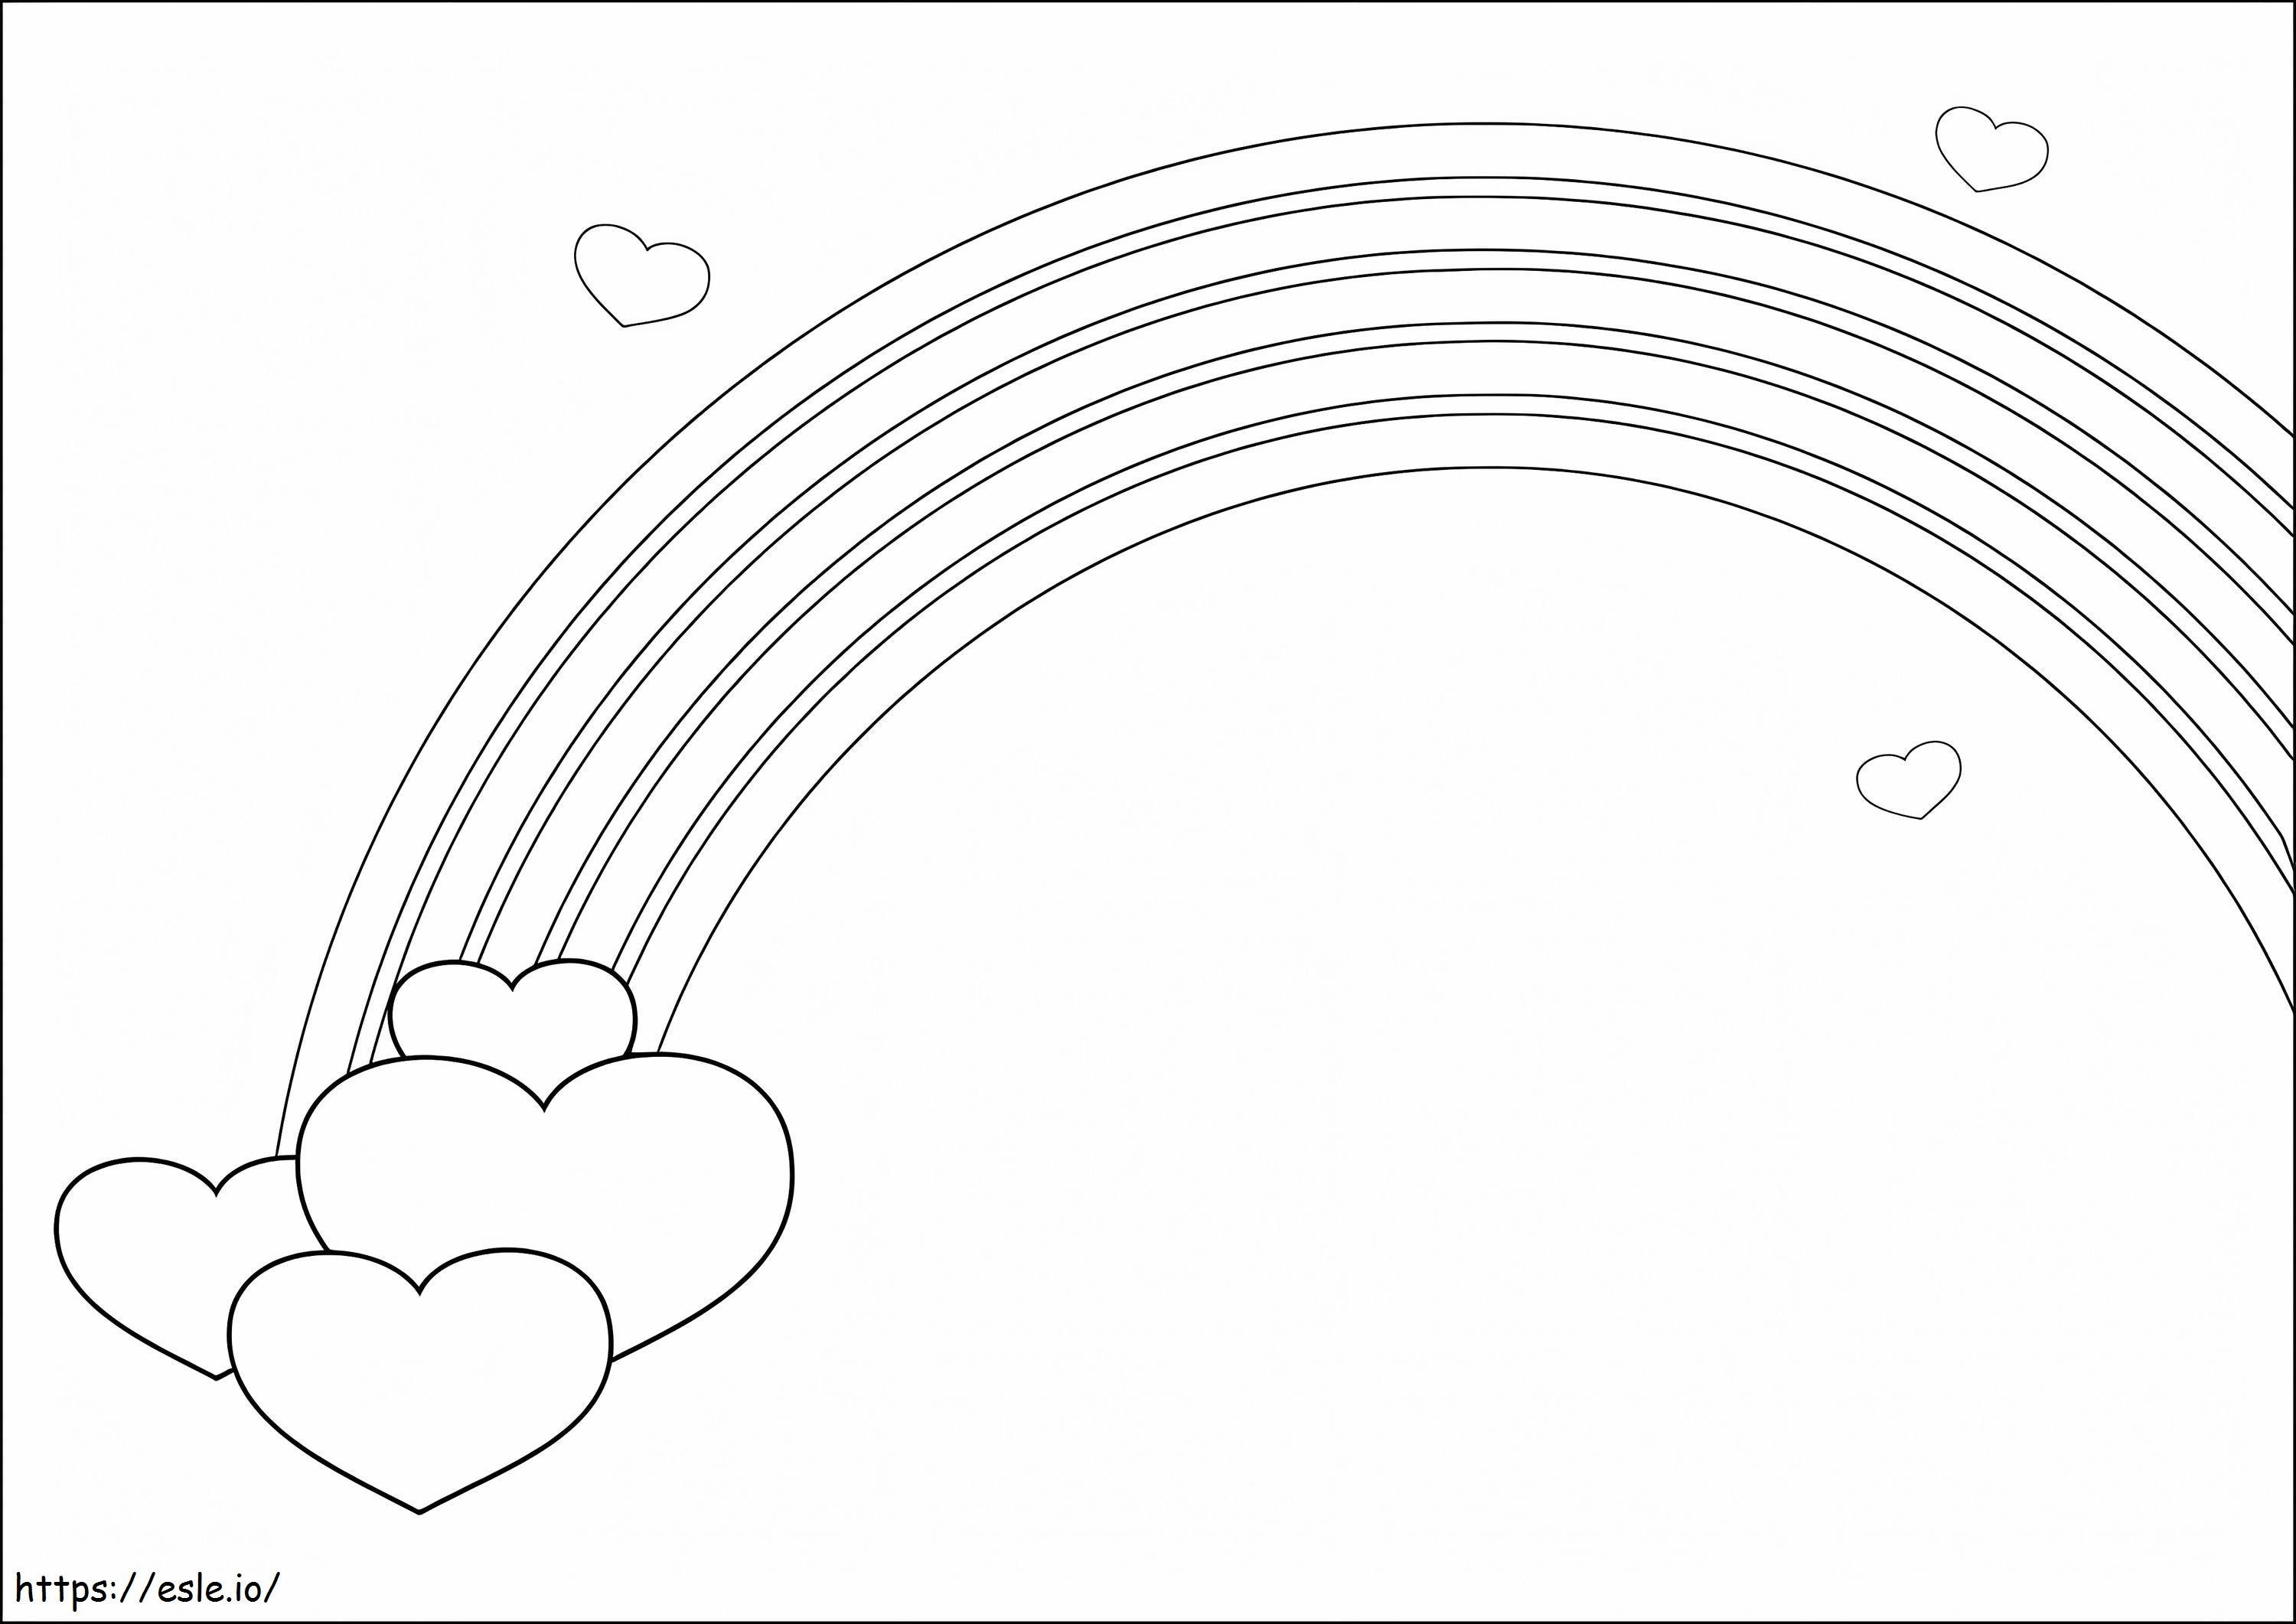 Coloriage Coeur et arc-en-ciel à imprimer dessin